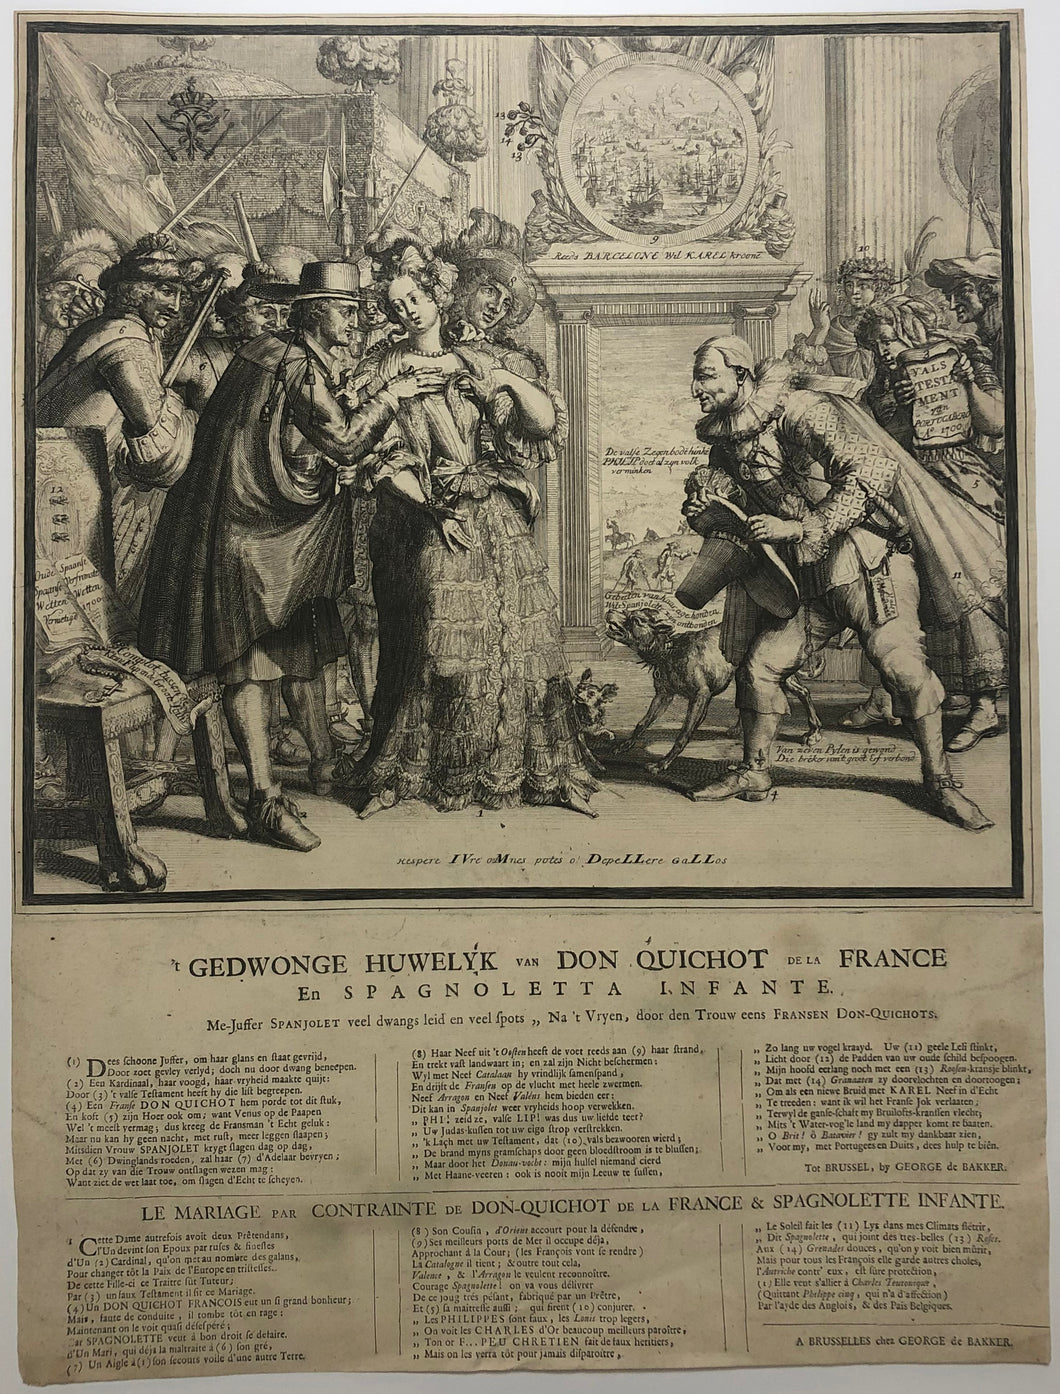 Le Mariage par contrainte de Don-Quichot de la France & Spagnolette Infante. Het gedwongen huwelijk van Don Quichot.  1706.